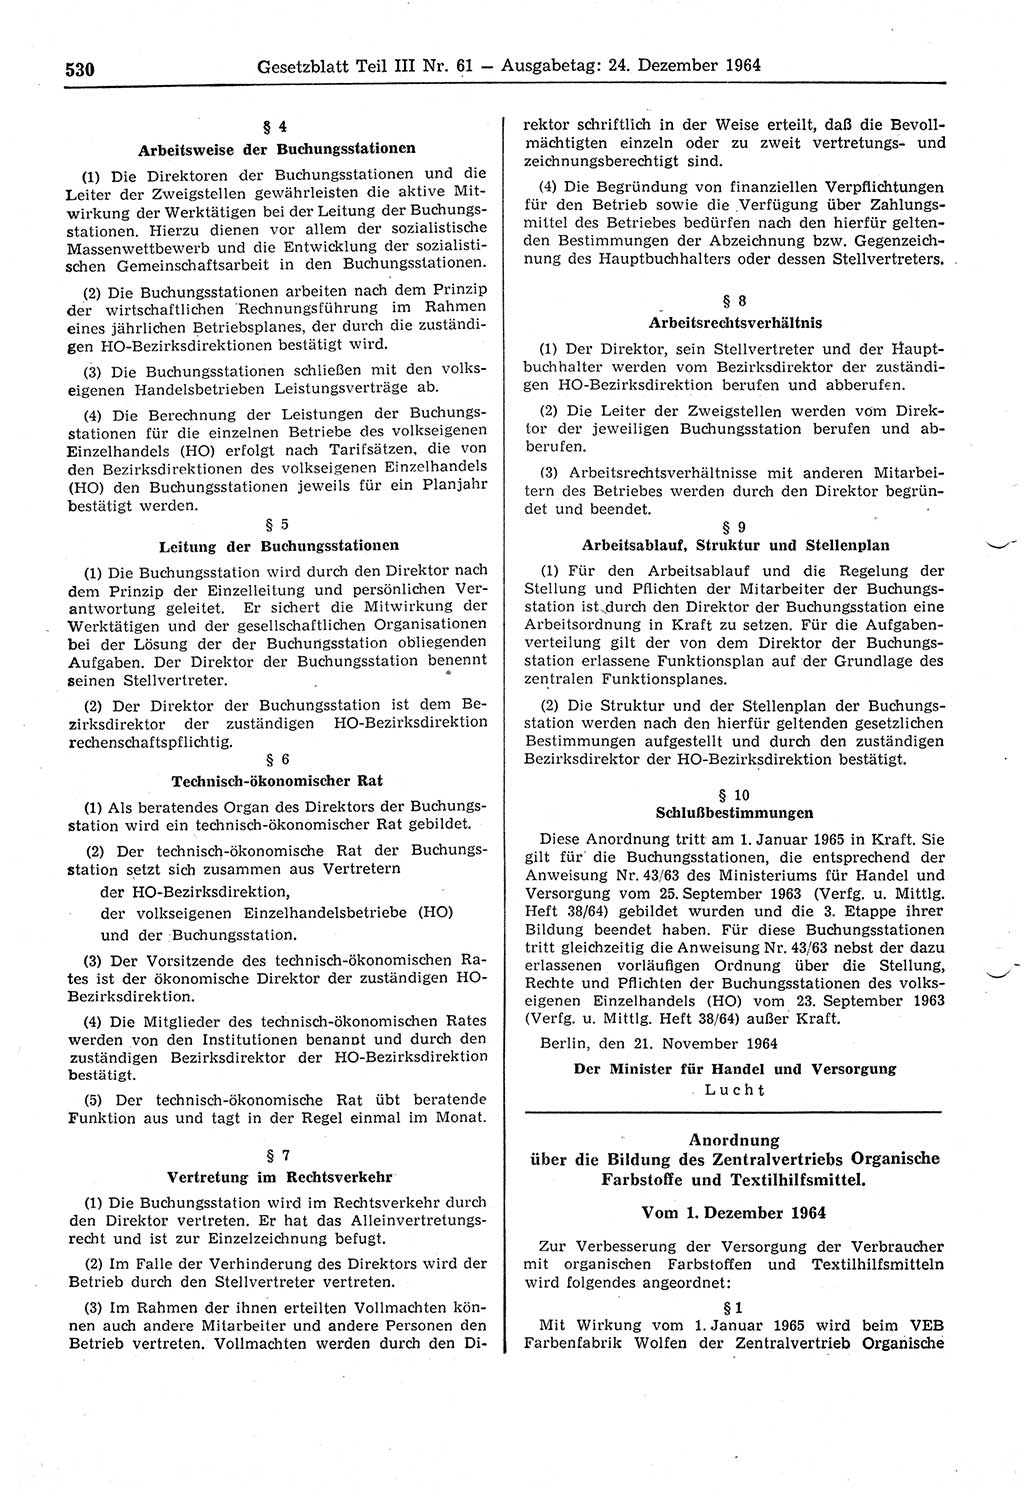 Gesetzblatt (GBl.) der Deutschen Demokratischen Republik (DDR) Teil ⅠⅠⅠ 1964, Seite 530 (GBl. DDR ⅠⅠⅠ 1964, S. 530)